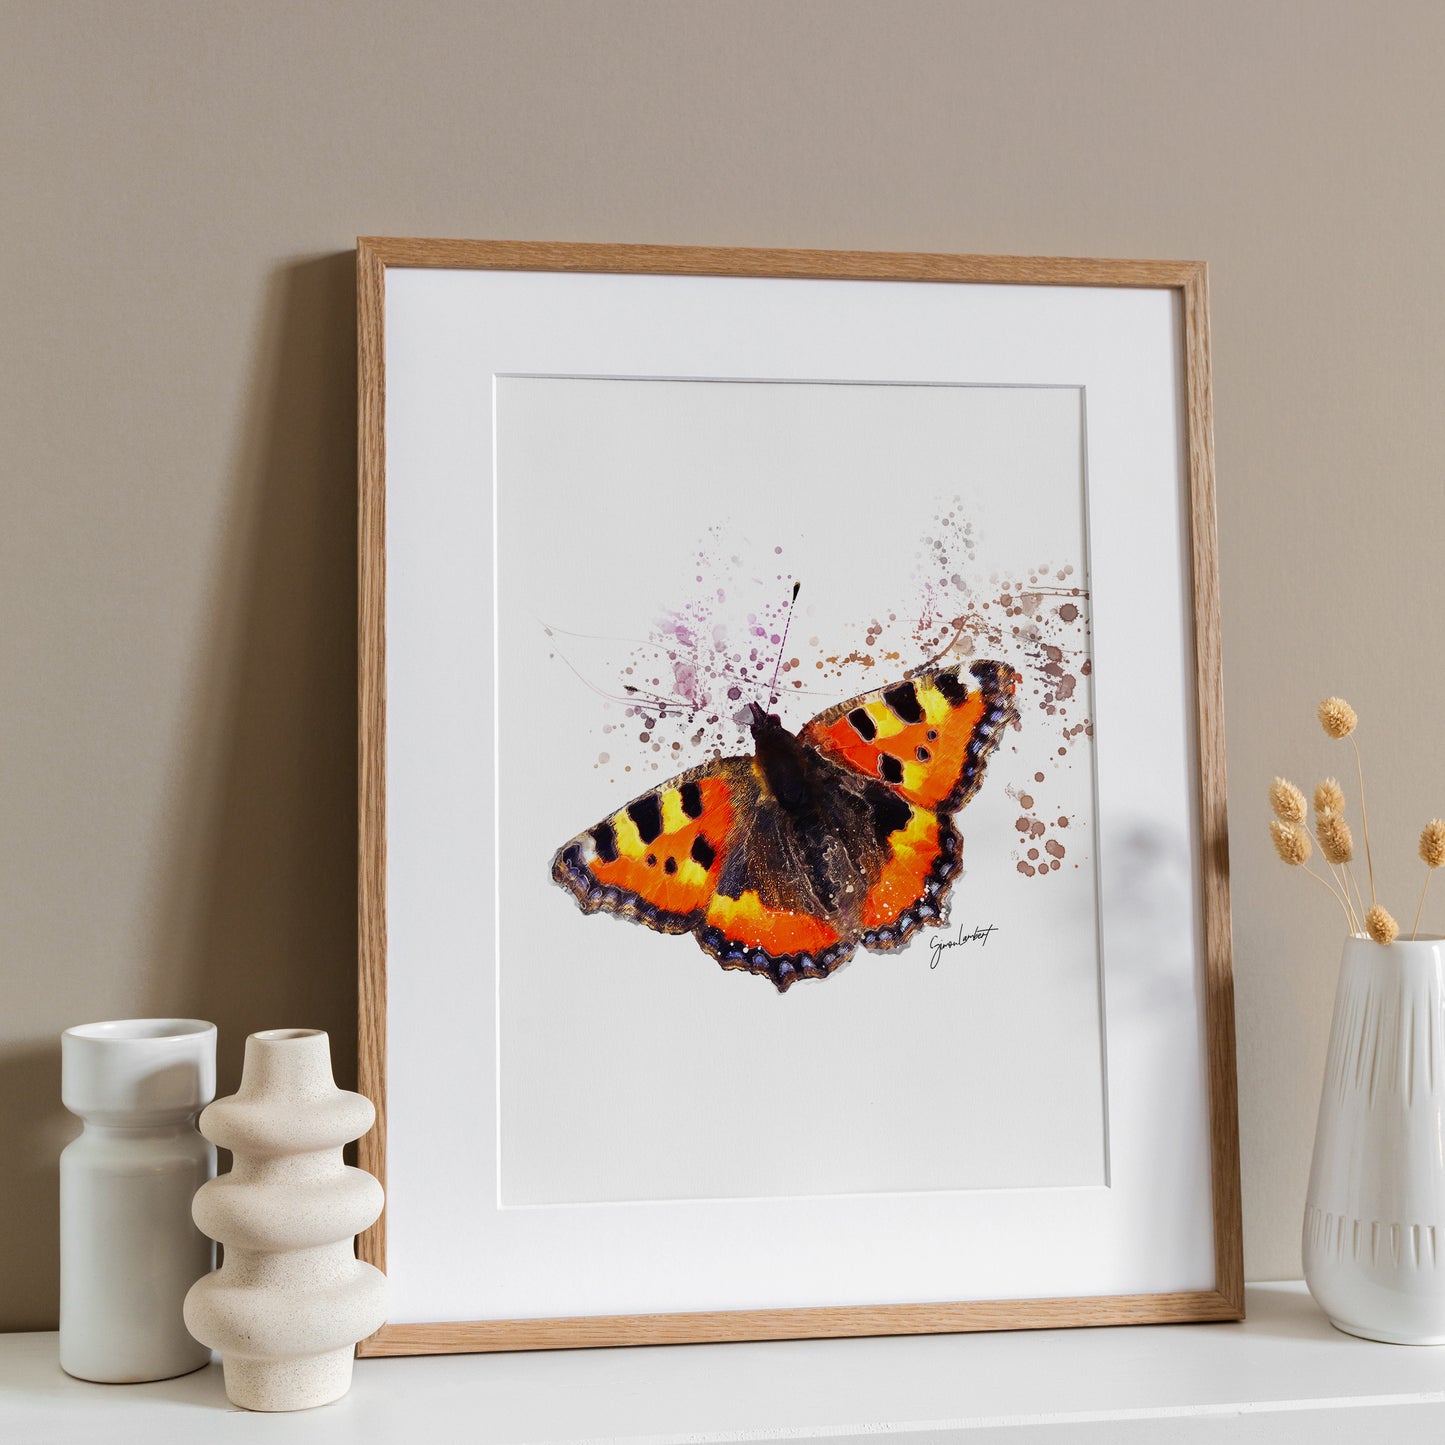 Tortoise Shell Butterfly Portrait Splatter Style Artwork Fine Art Print (Unframed)